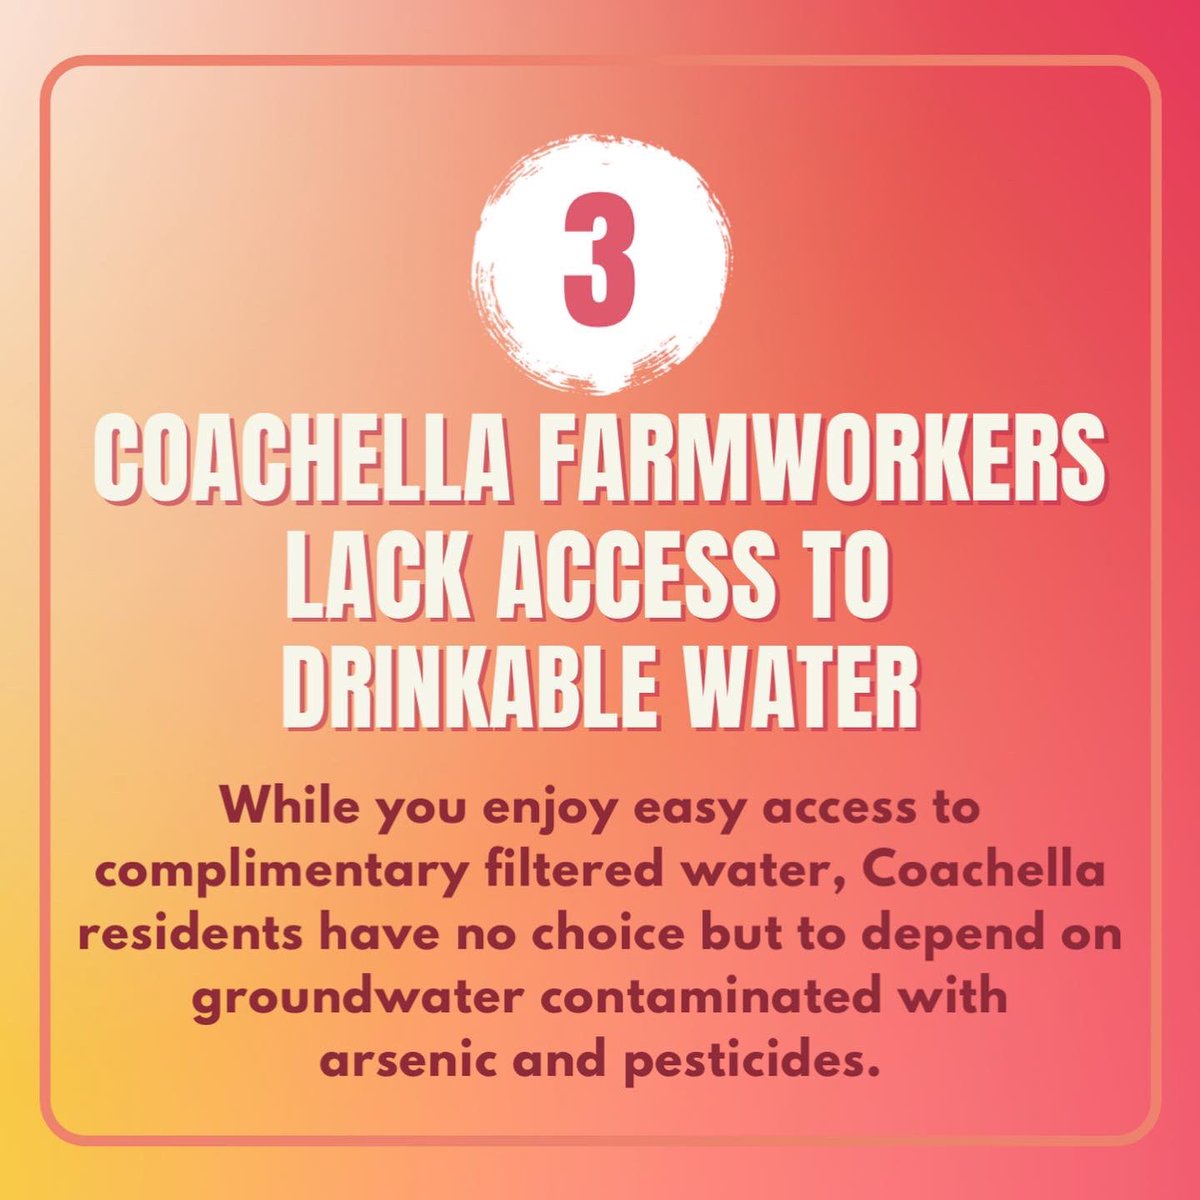 Coachella farmworkers lack access to drinkable water. #Coachella #Coachella2022 #environmentaljustice